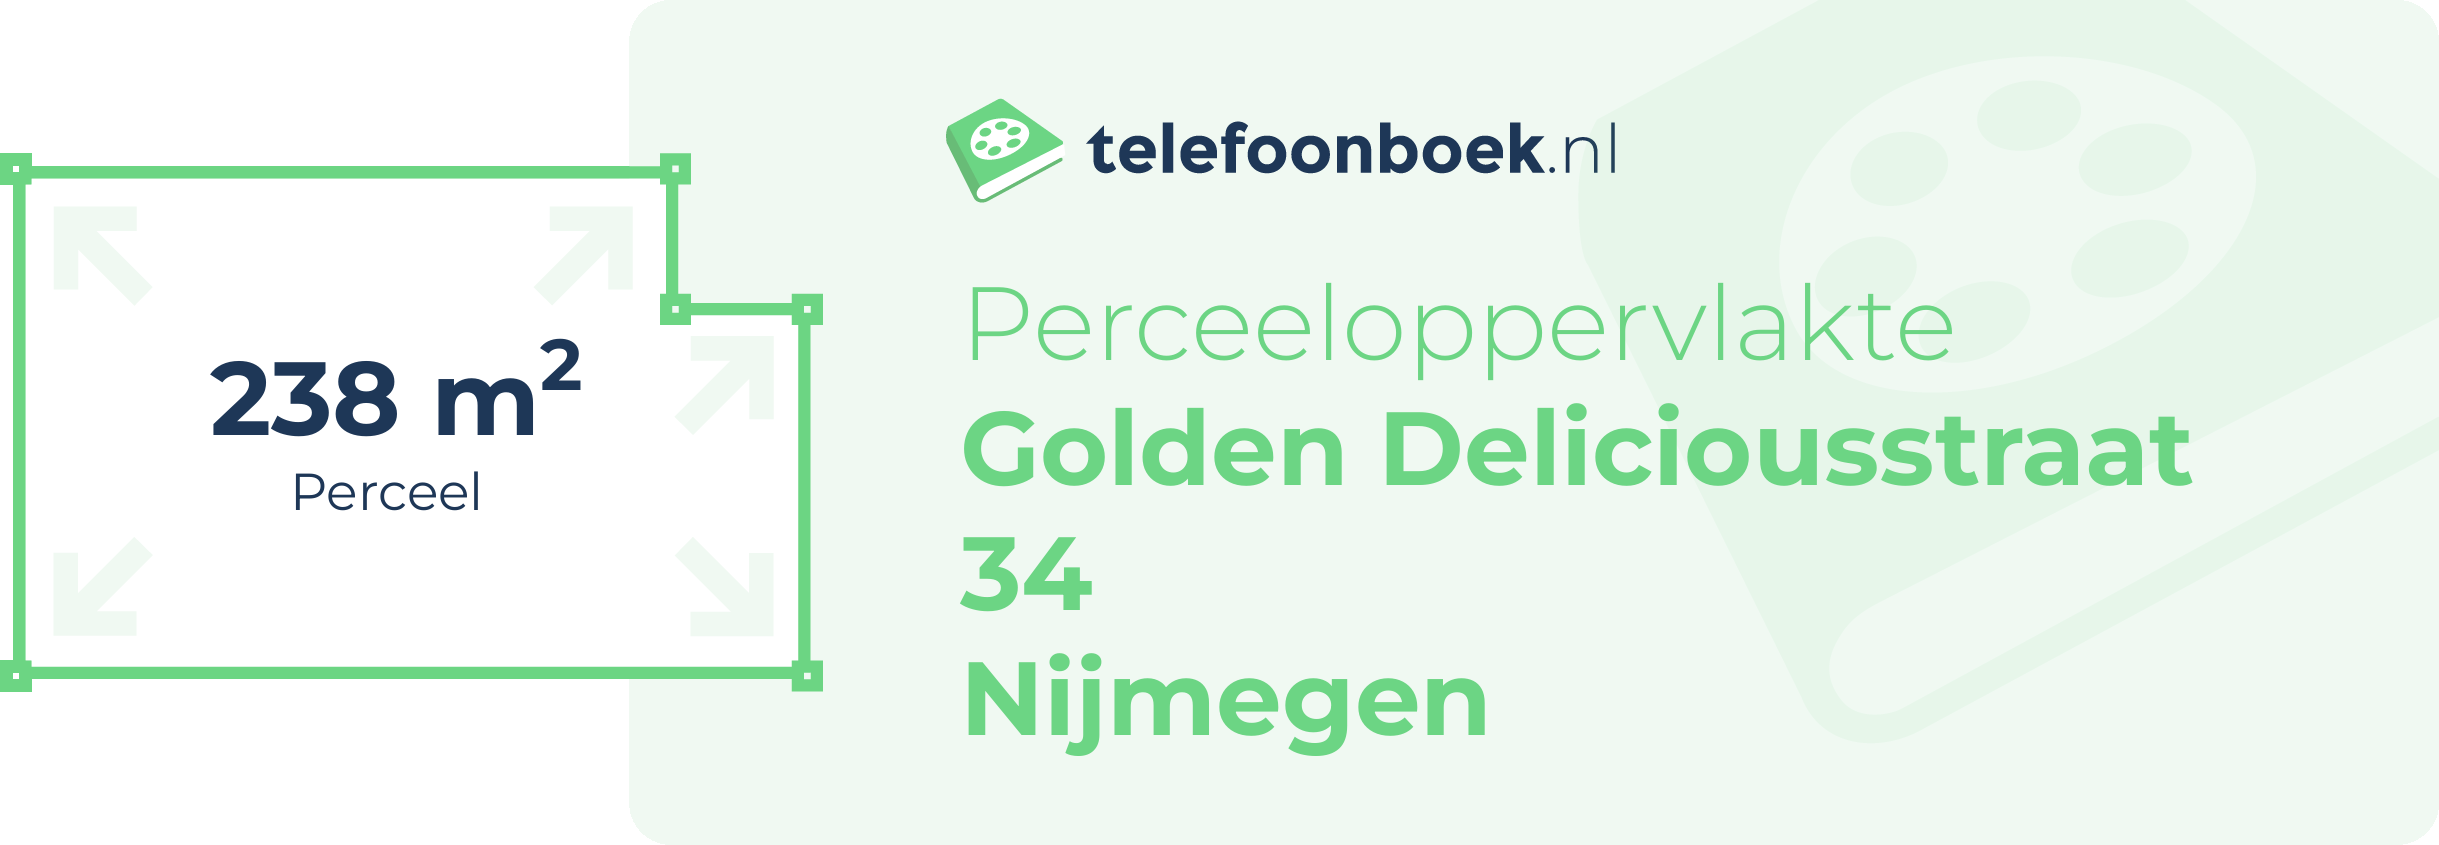 Perceeloppervlakte Golden Deliciousstraat 34 Nijmegen